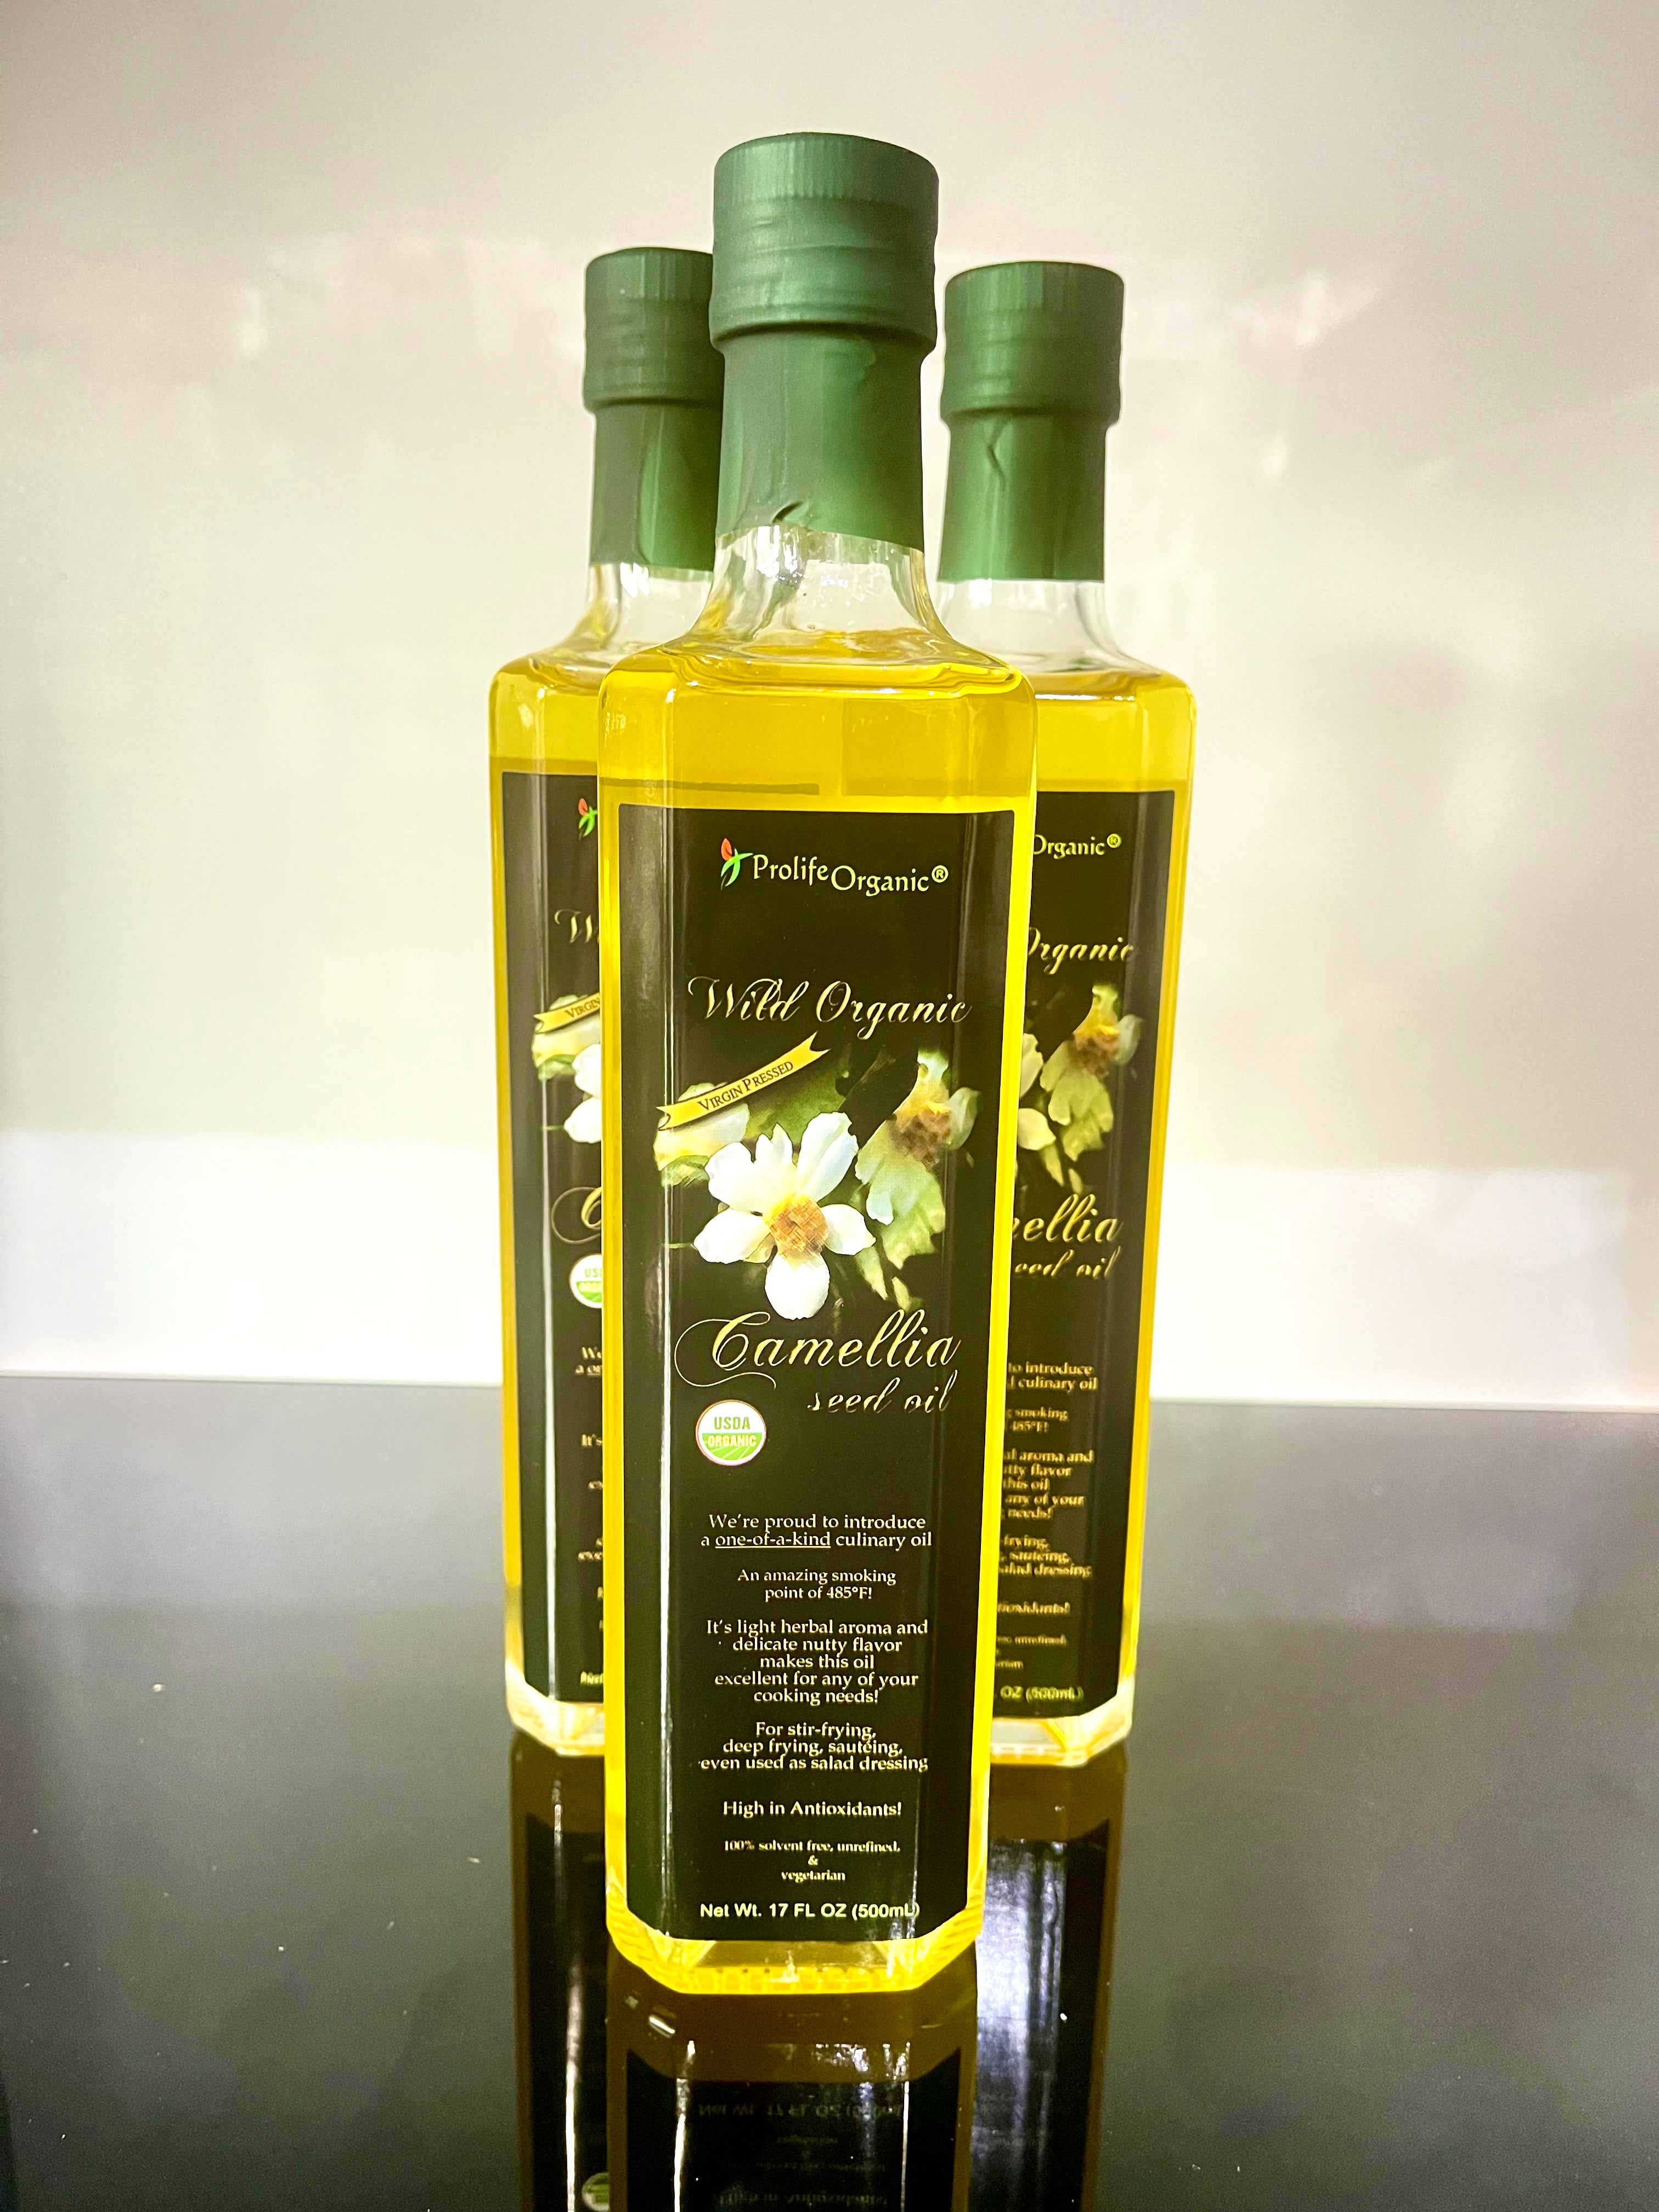 Camellia seed oil (500 mL)